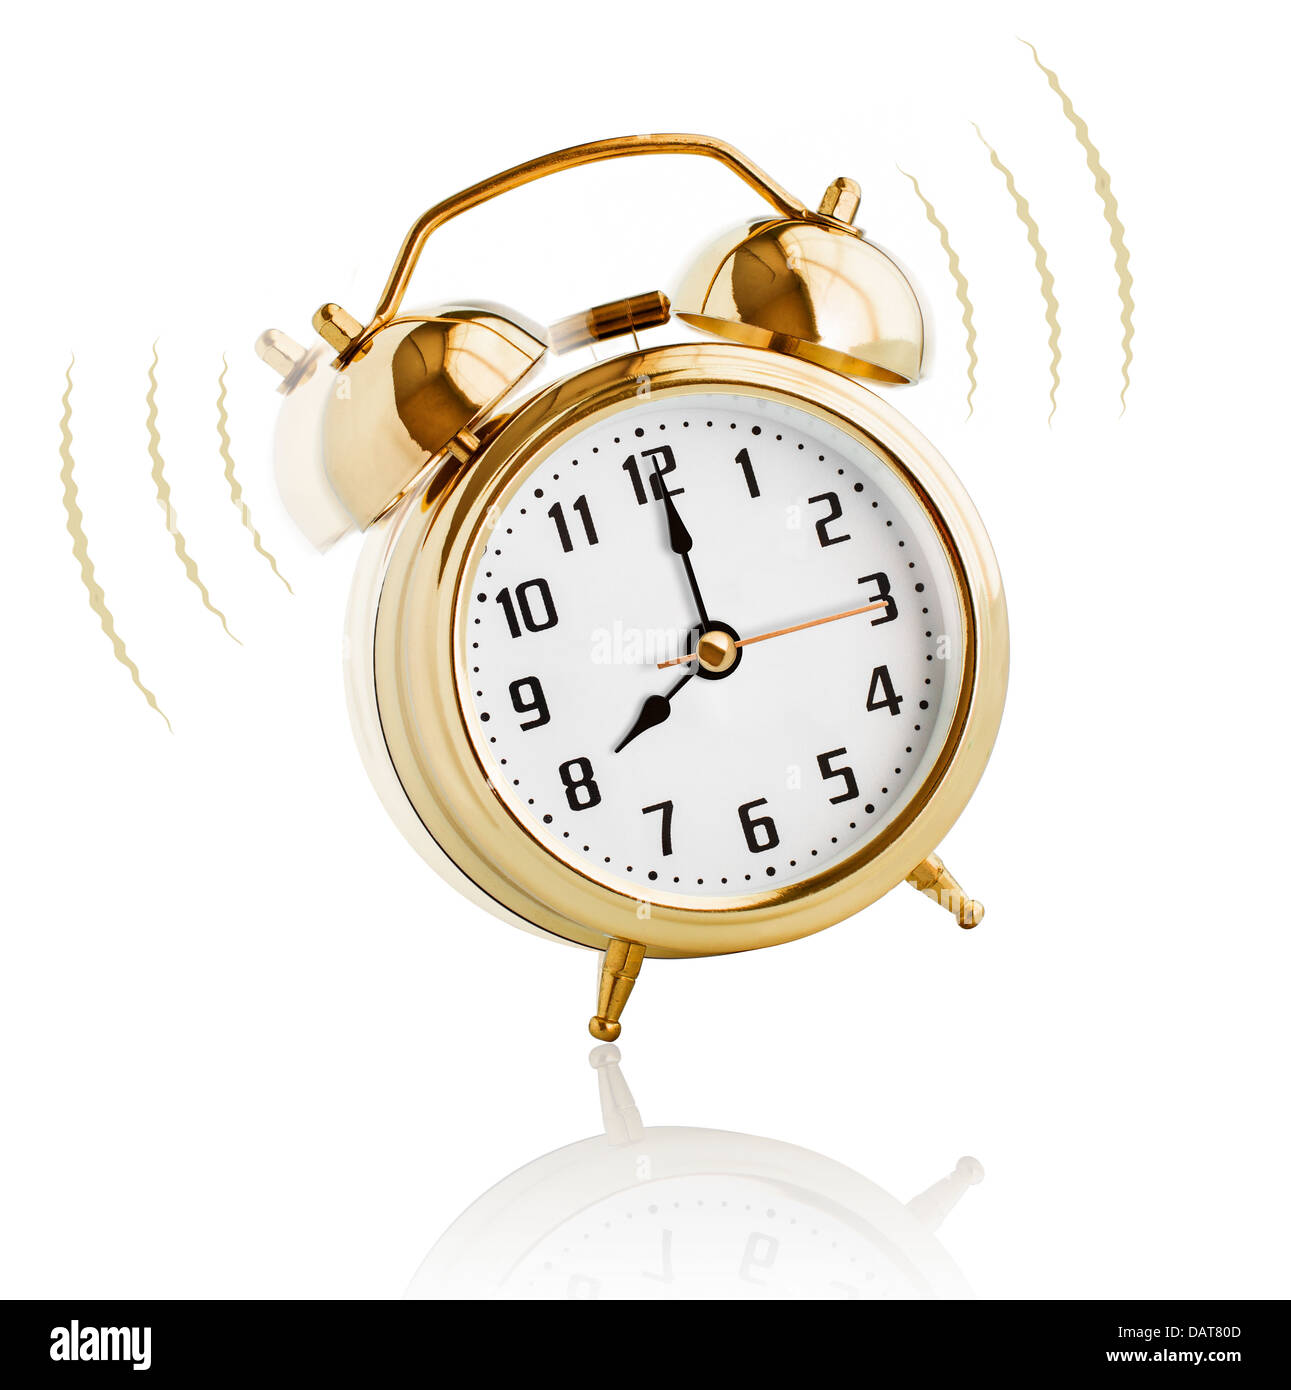 Alarm clock ringing at 8 o'clock morning Stock Photo - Alamy